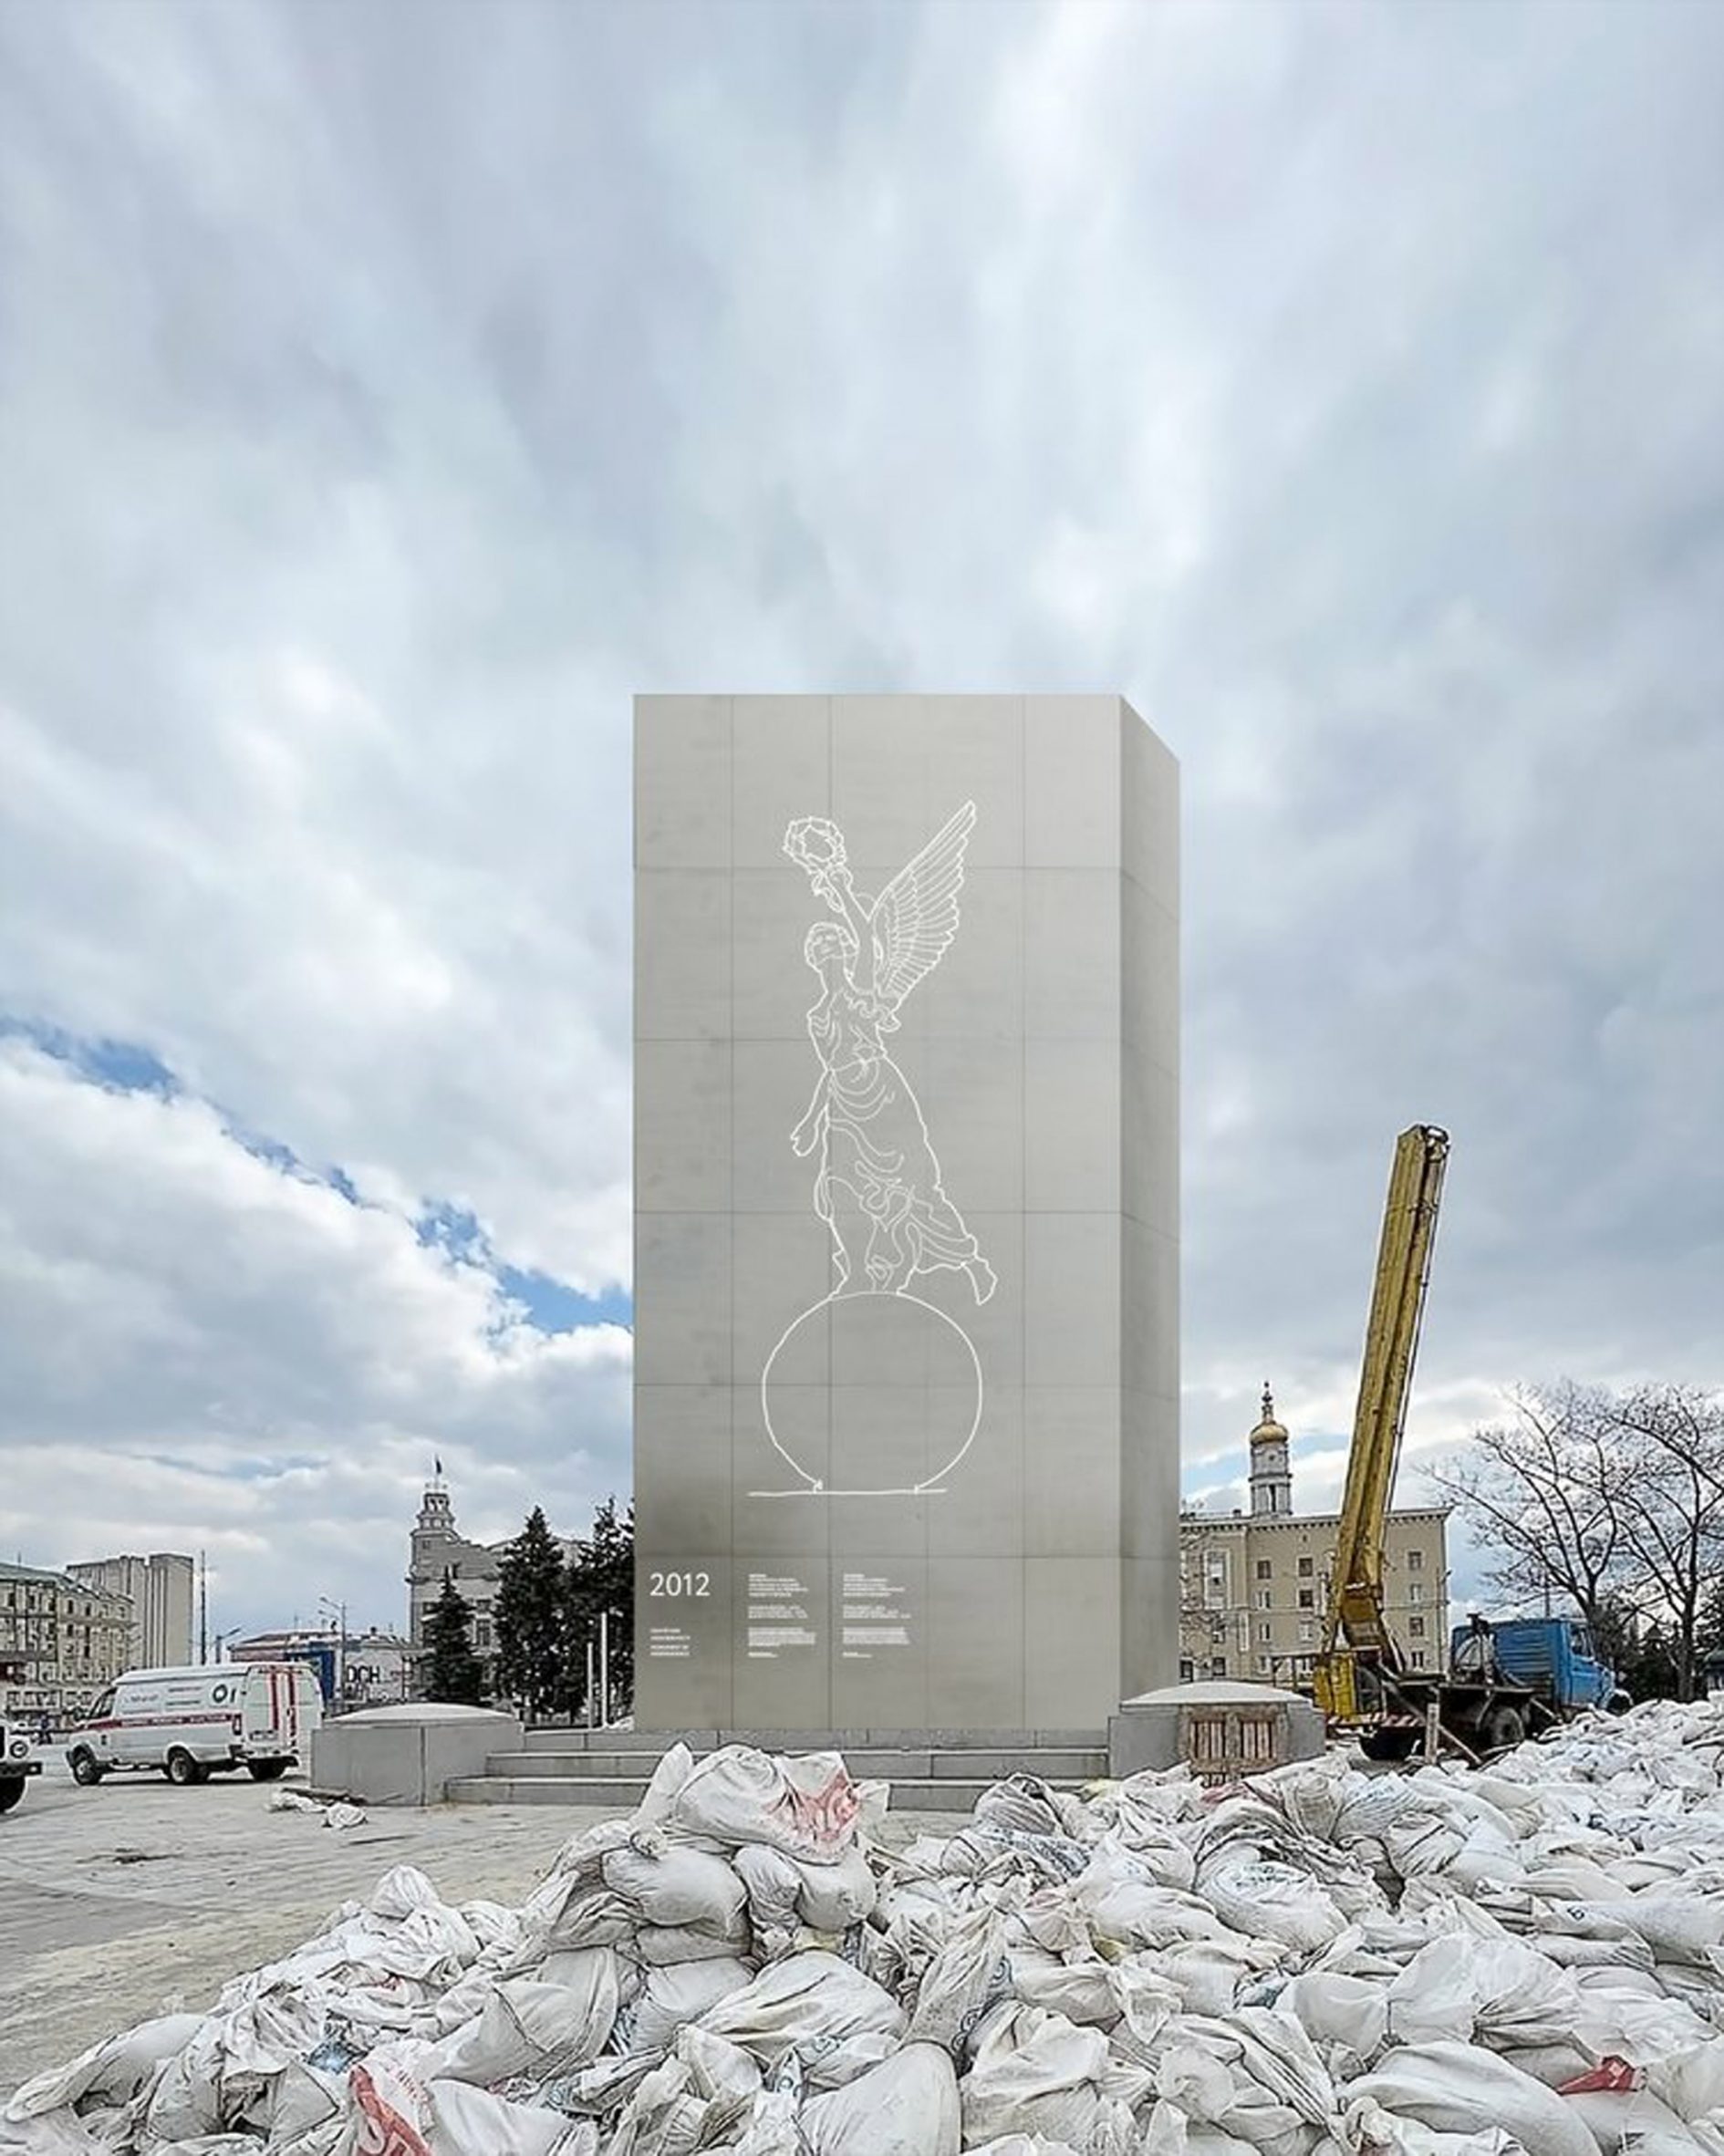 RE:Ukraine Monuments project by Balbek Bureau